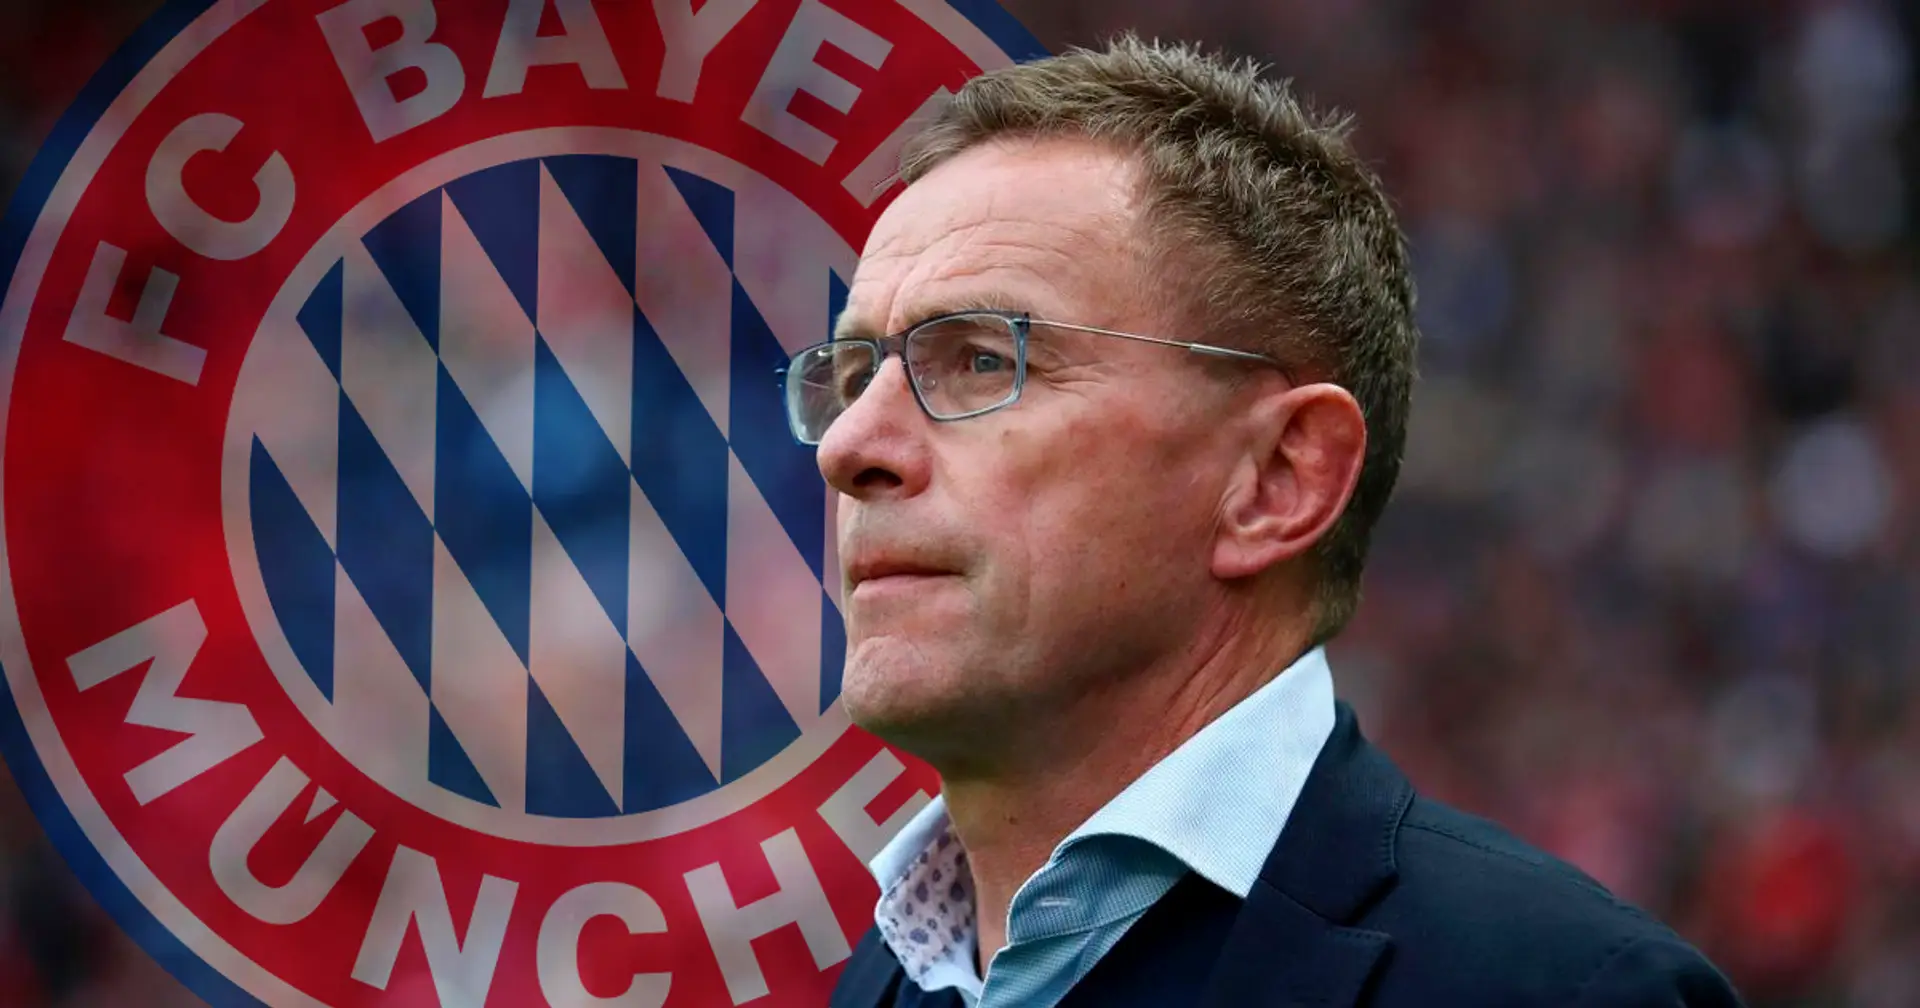 "Viele Trainer würden zu Fuß nach München gehen. Bei Ralf Rangnick bin ich mir da nicht sicher" - österreichischer Insider